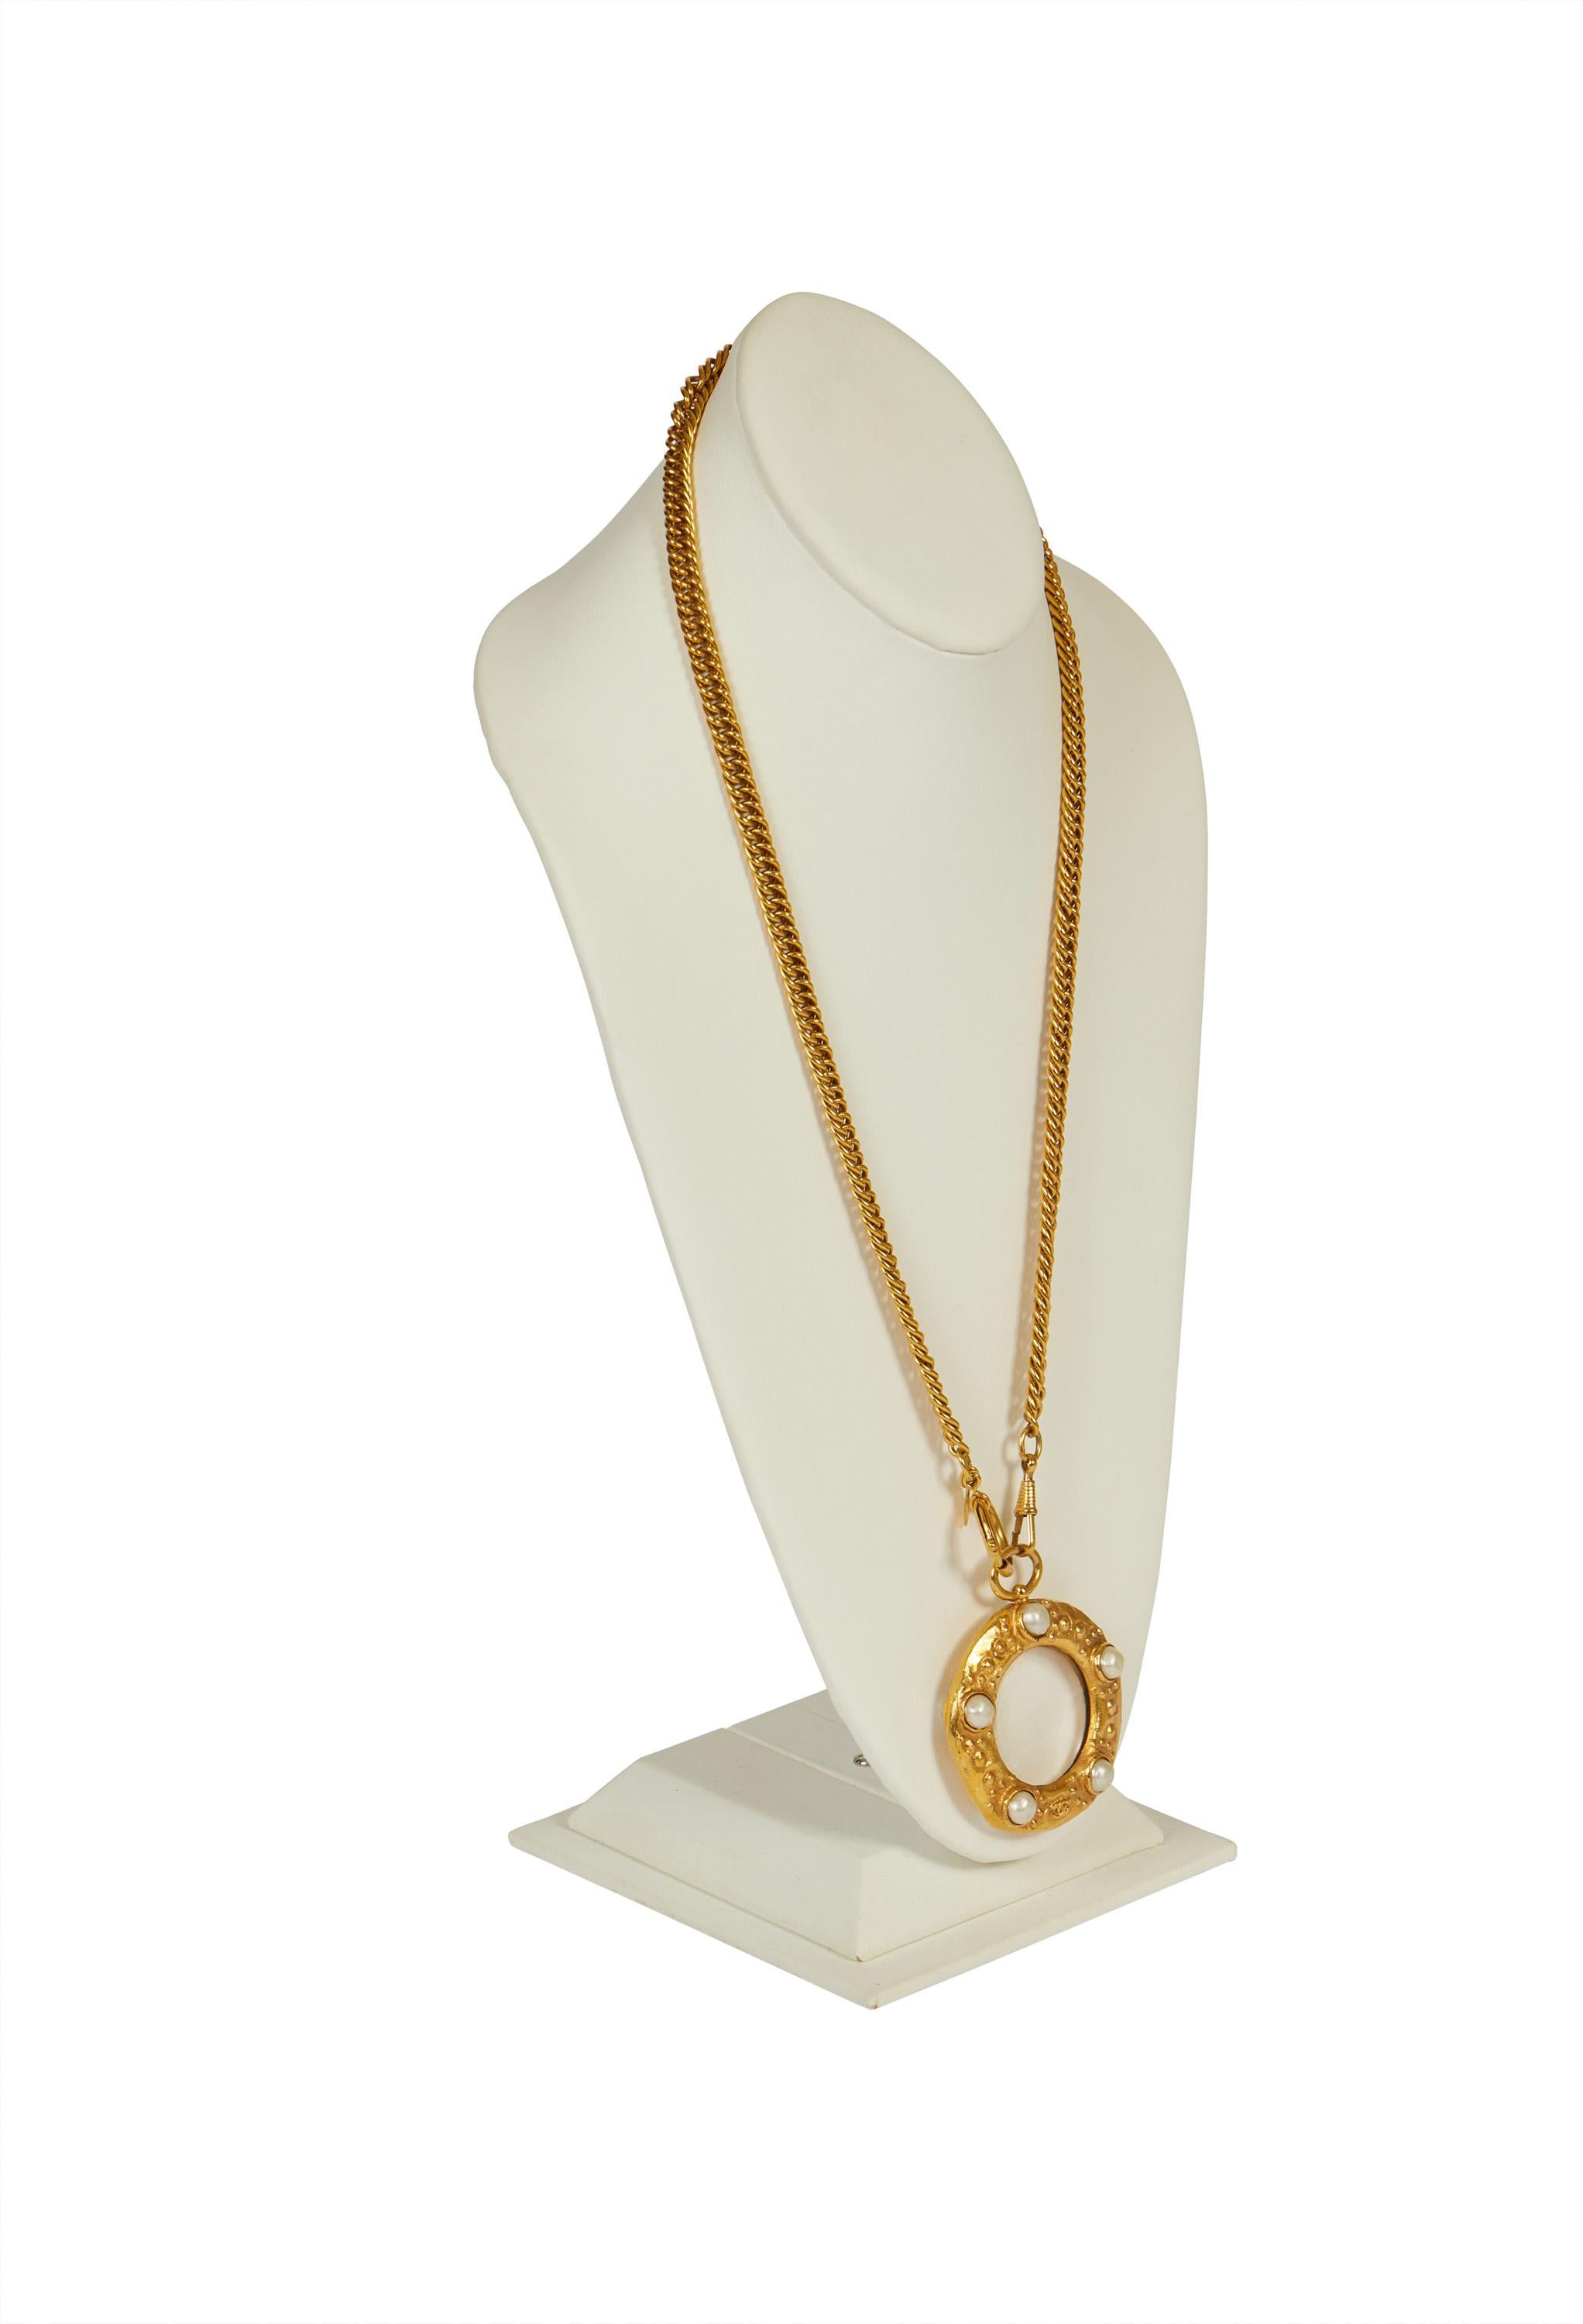 Chanel seltene und sammelbare Perlenlupen-Halskette. Kann einzeln oder doppelt getragen werden. Sammlung 23, Mitte der 80er Jahre, von Victoire de Castellaine. Wird mit Originalverpackung oder -beutel geliefert.